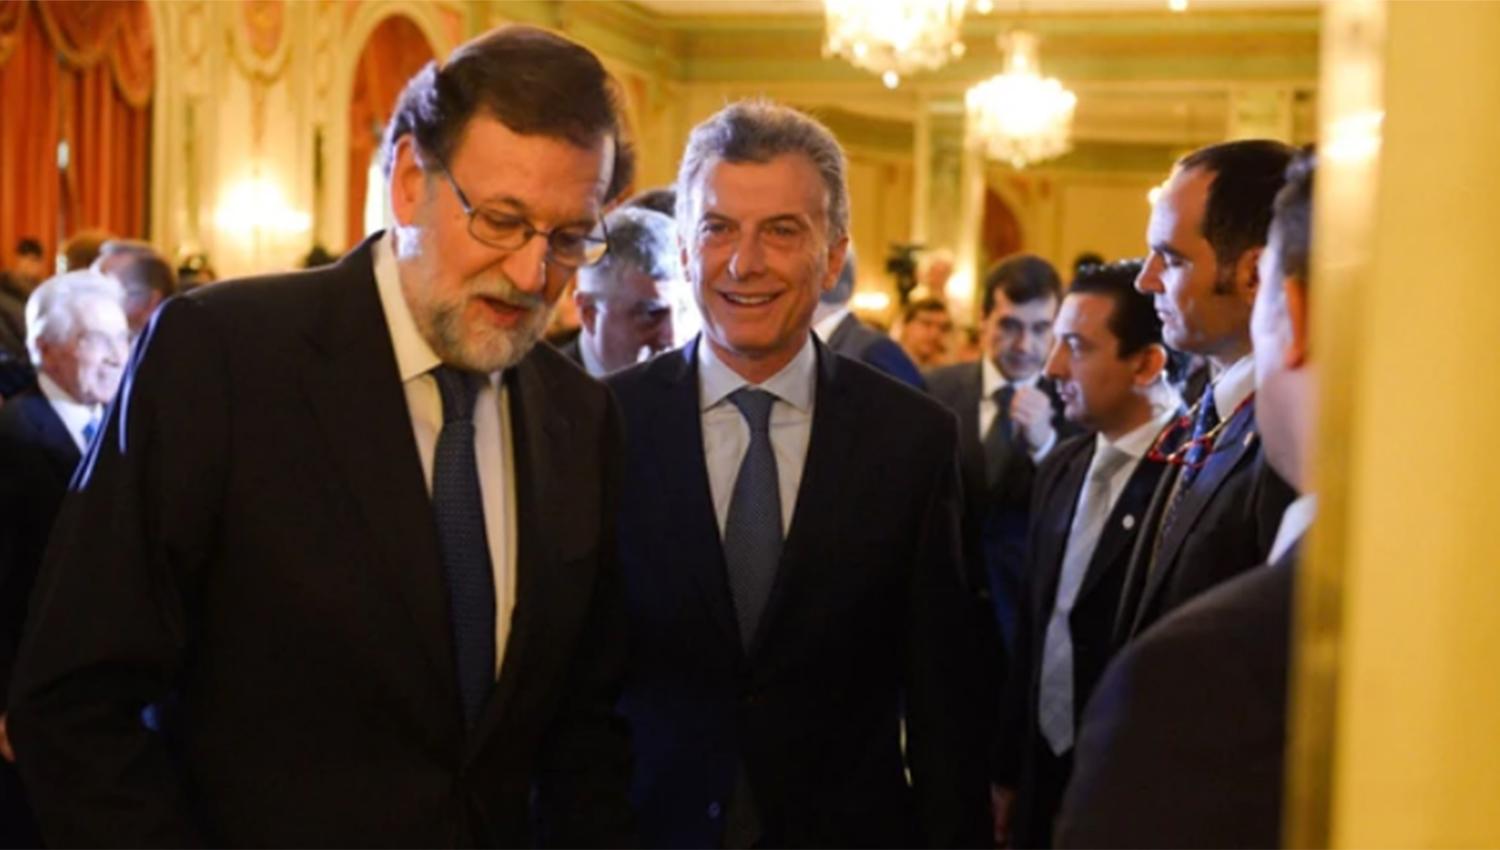 EN BUENOS AIRES. Mariano Rajoy y Mauricio Macri, en el hotel Alvear, antes de la conferencia del mandatario español. FOTO TOMADA DE INFOBAE.COM